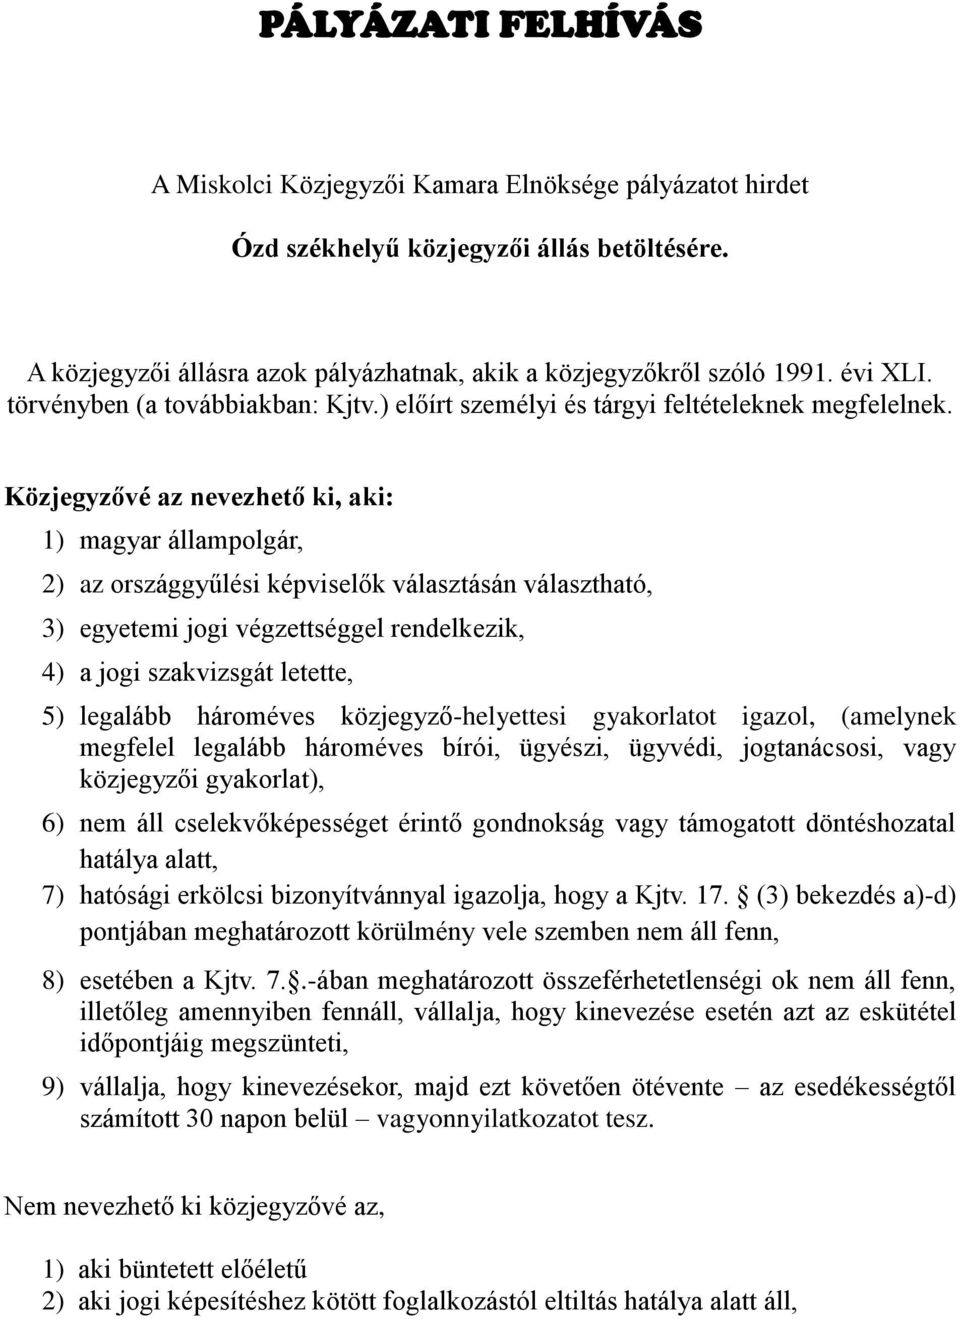 Közjegyzővé az nevezhető ki, aki: 1) magyar állampolgár, 2) az országgyűlési képviselők választásán választható, 3) egyetemi jogi végzettséggel rendelkezik, 4) a jogi szakvizsgát letette, 5) legalább